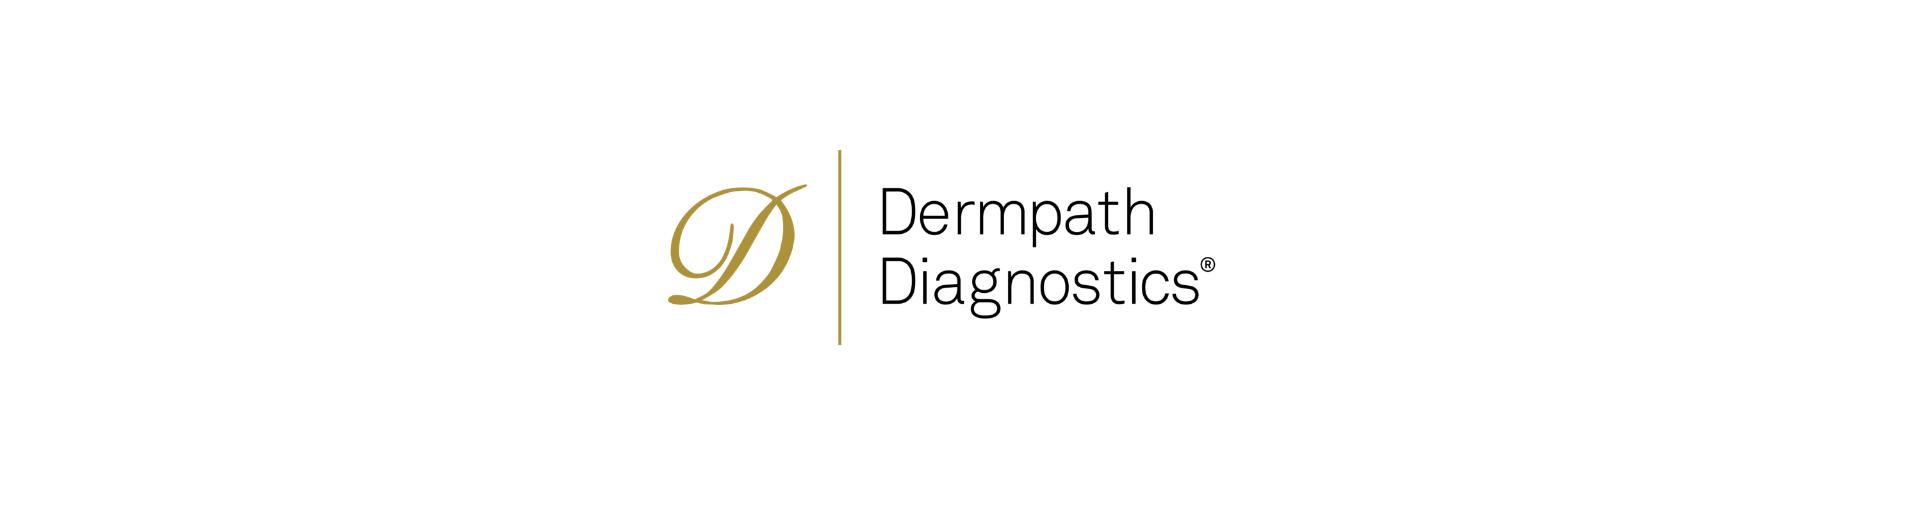 Dermpath-Diagnostics-logo-transparent